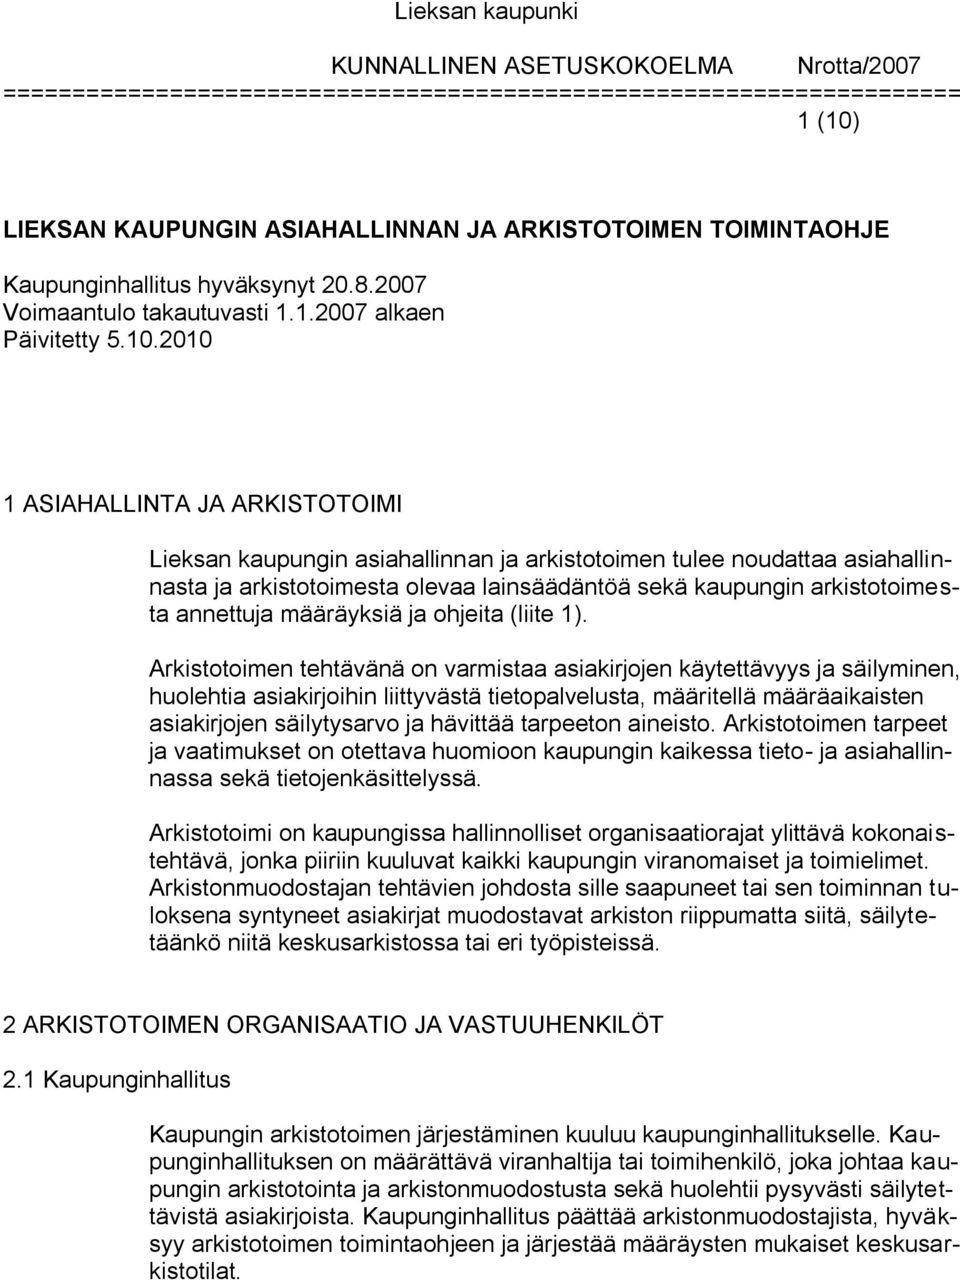 2010 1 ASIAHALLINTA JA ARKISTOTOIMI Lieksan kaupungin asiahallinnan ja arkistotoimen tulee noudattaa asiahallinnasta ja arkistotoimesta olevaa lainsäädäntöä sekä kaupungin arkistotoimesta annettuja